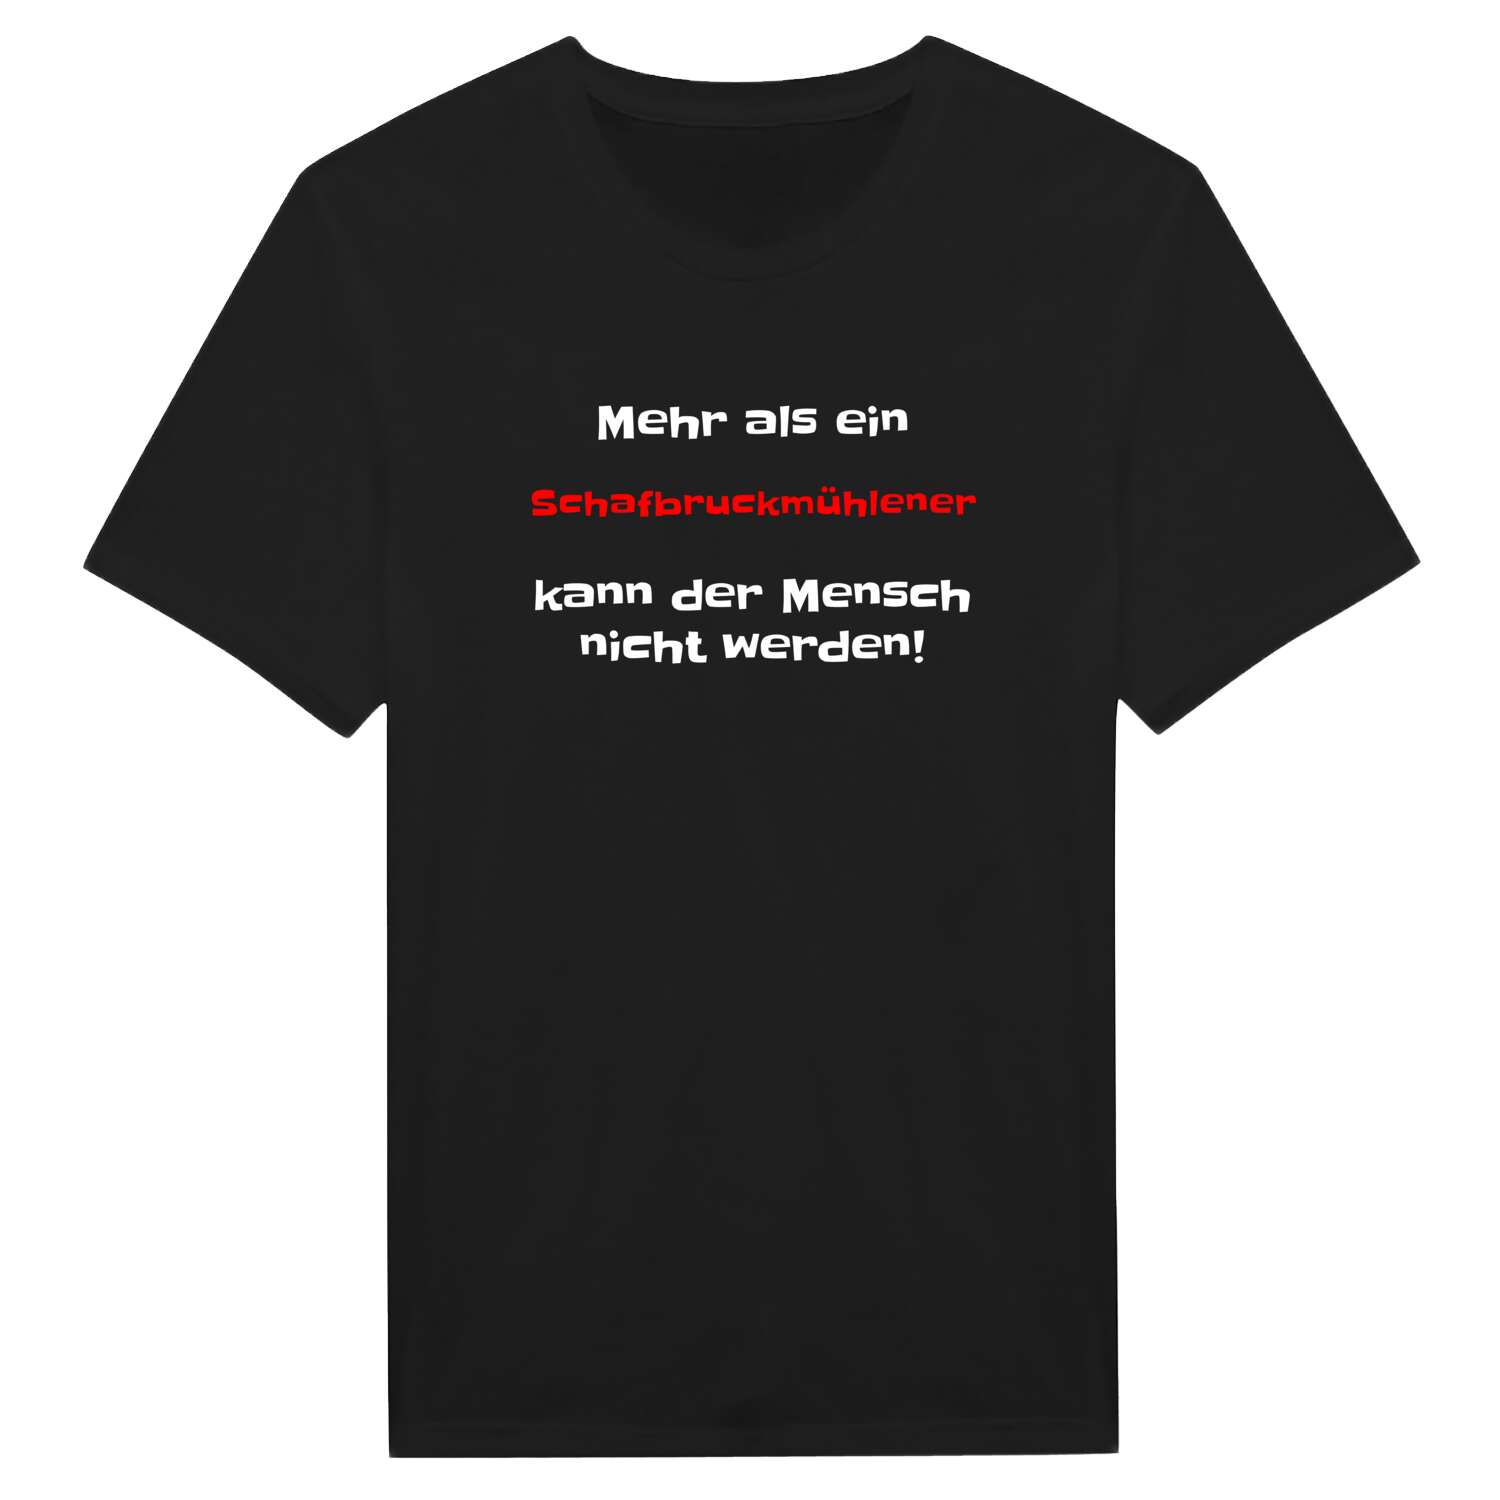 Schafbruckmühle T-Shirt »Mehr als ein«